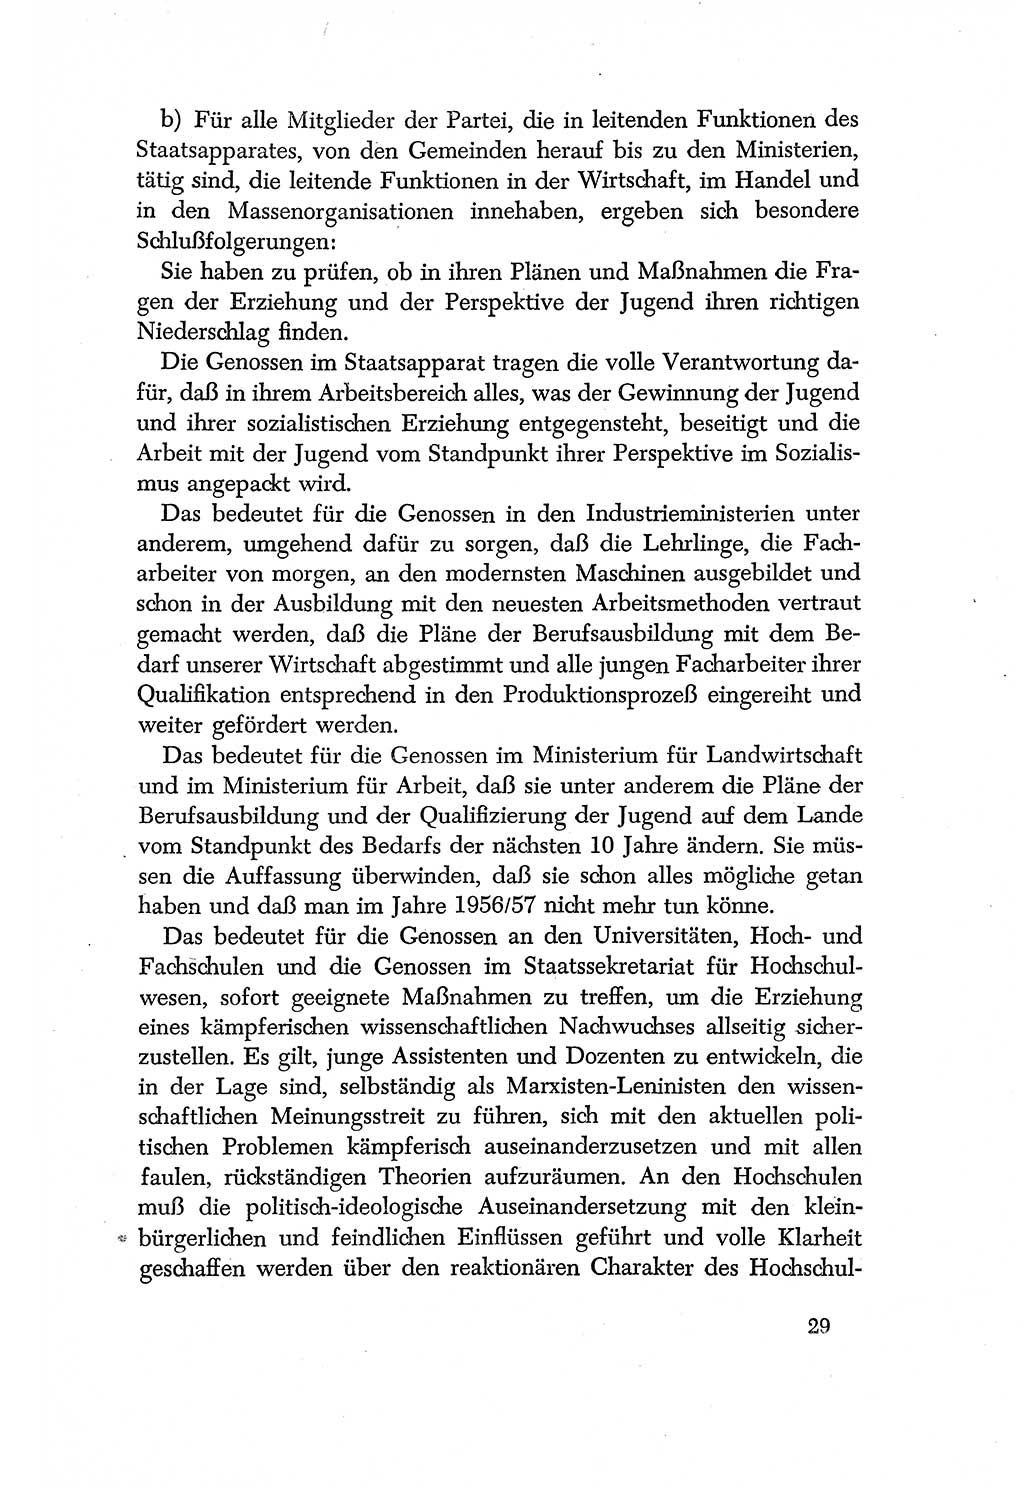 Dokumente der Sozialistischen Einheitspartei Deutschlands (SED) [Deutsche Demokratische Republik (DDR)] 1956-1957, Seite 29 (Dok. SED DDR 1956-1957, S. 29)